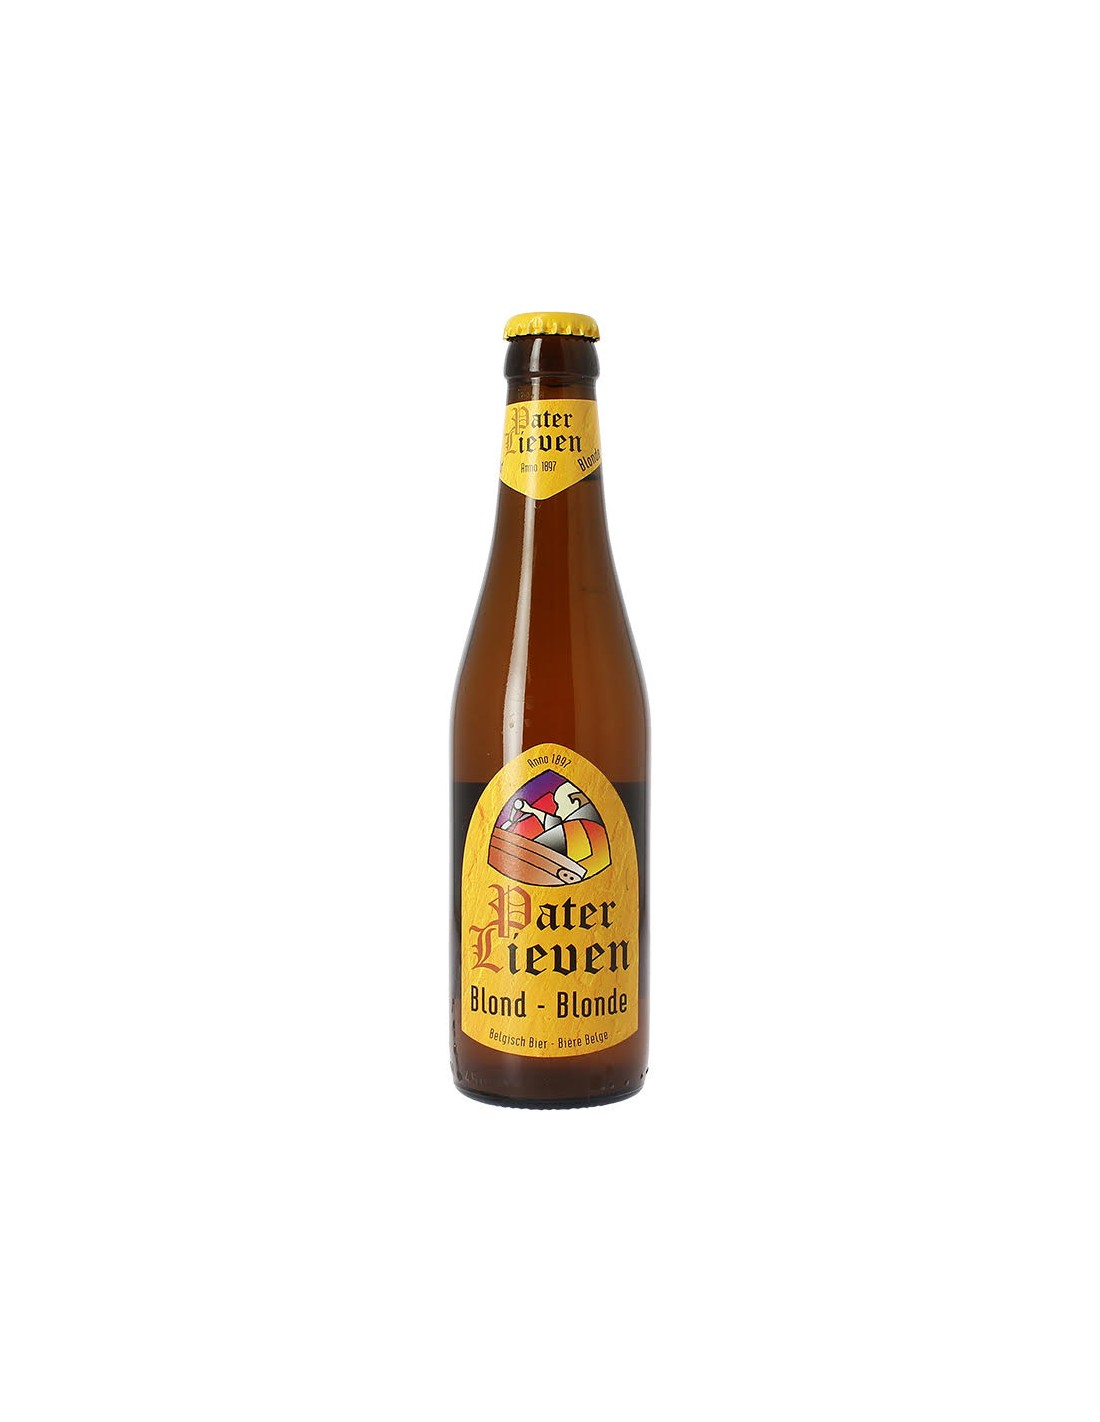 Bere blonda Pater Lieven, 6.5% alc., 0.33L, sticla, Belgia alcooldiscount.ro